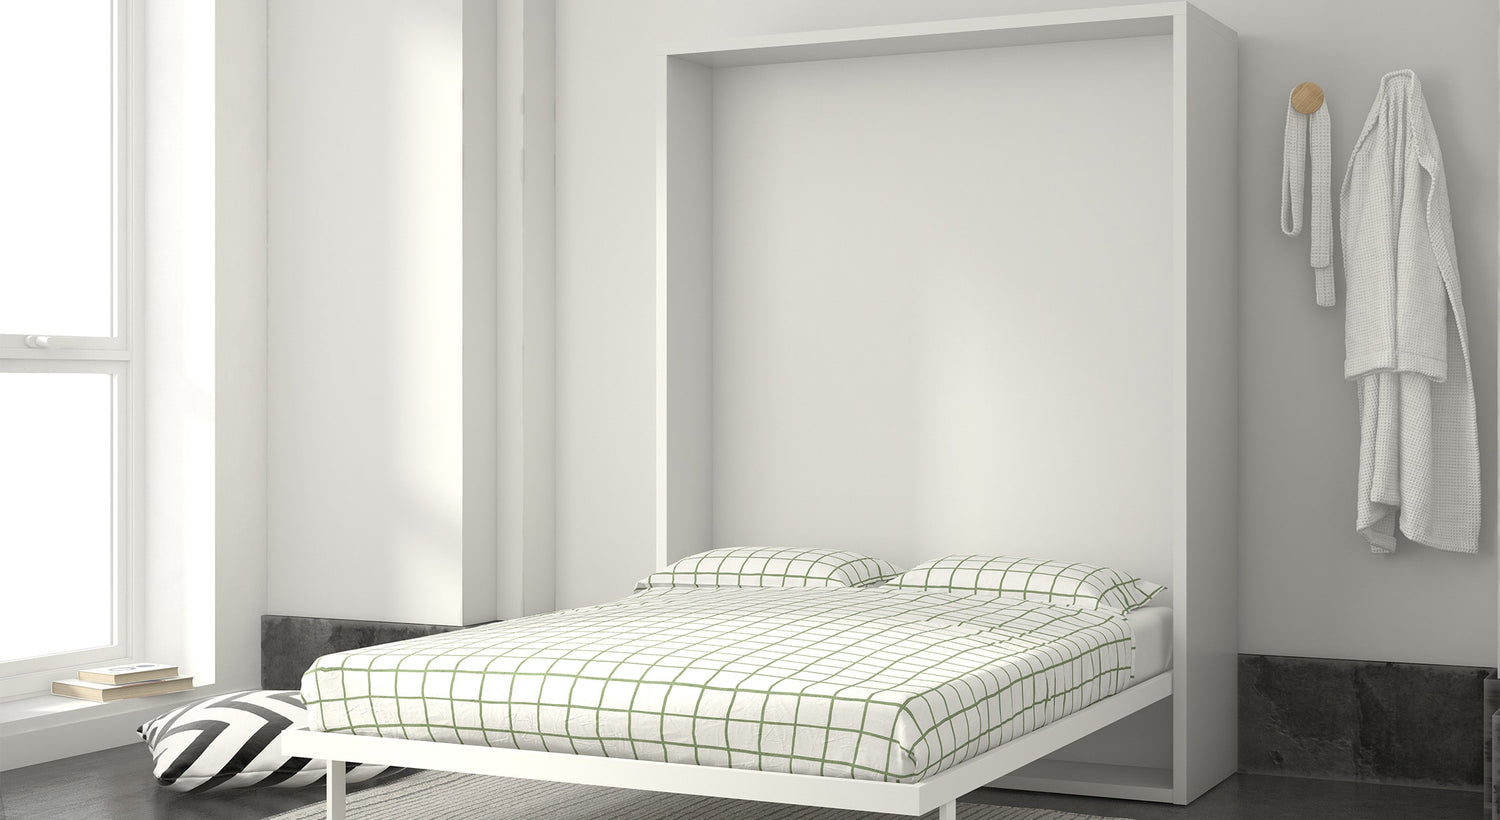 Comment bien choisir un lit combiné adulte ?